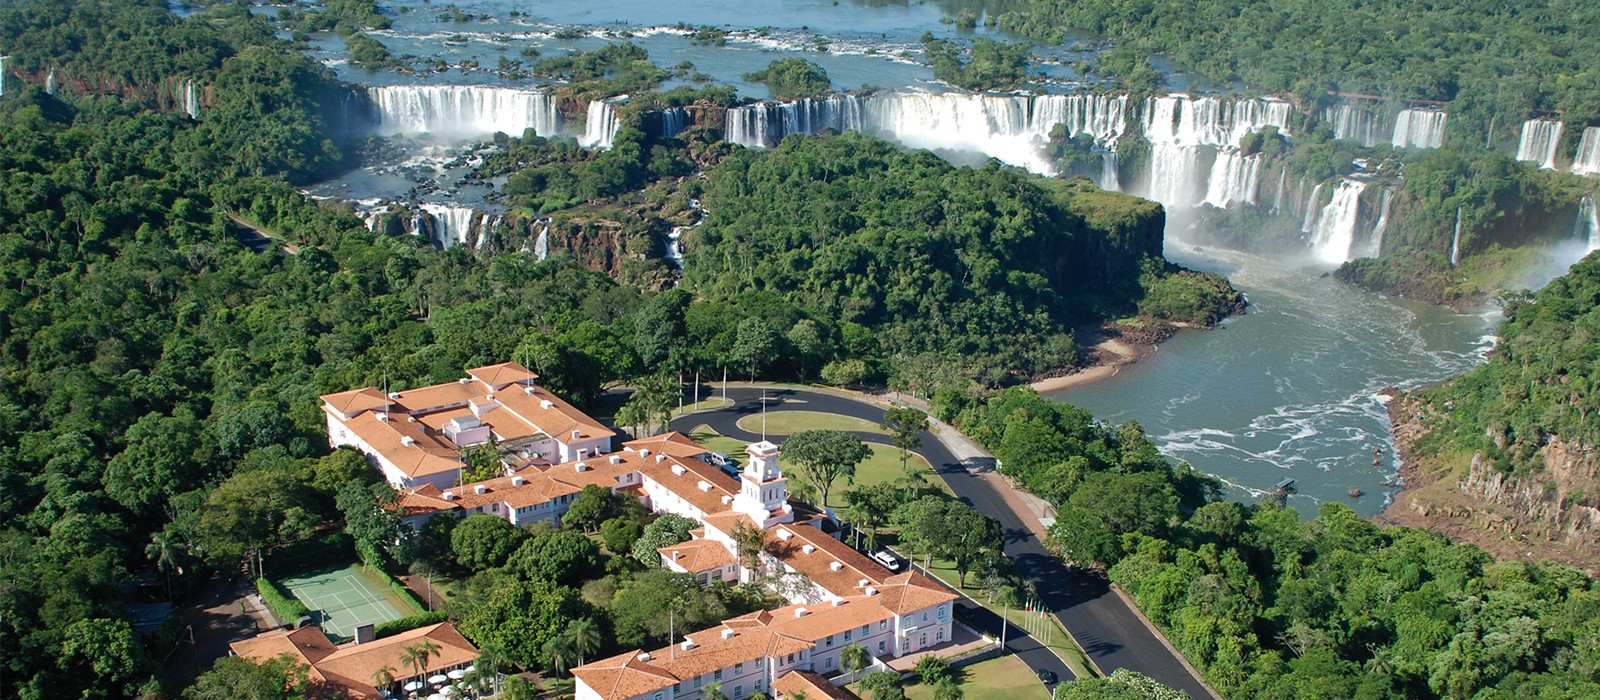 header - belmond hotel das Cataratas - luxury brazil holiday packages